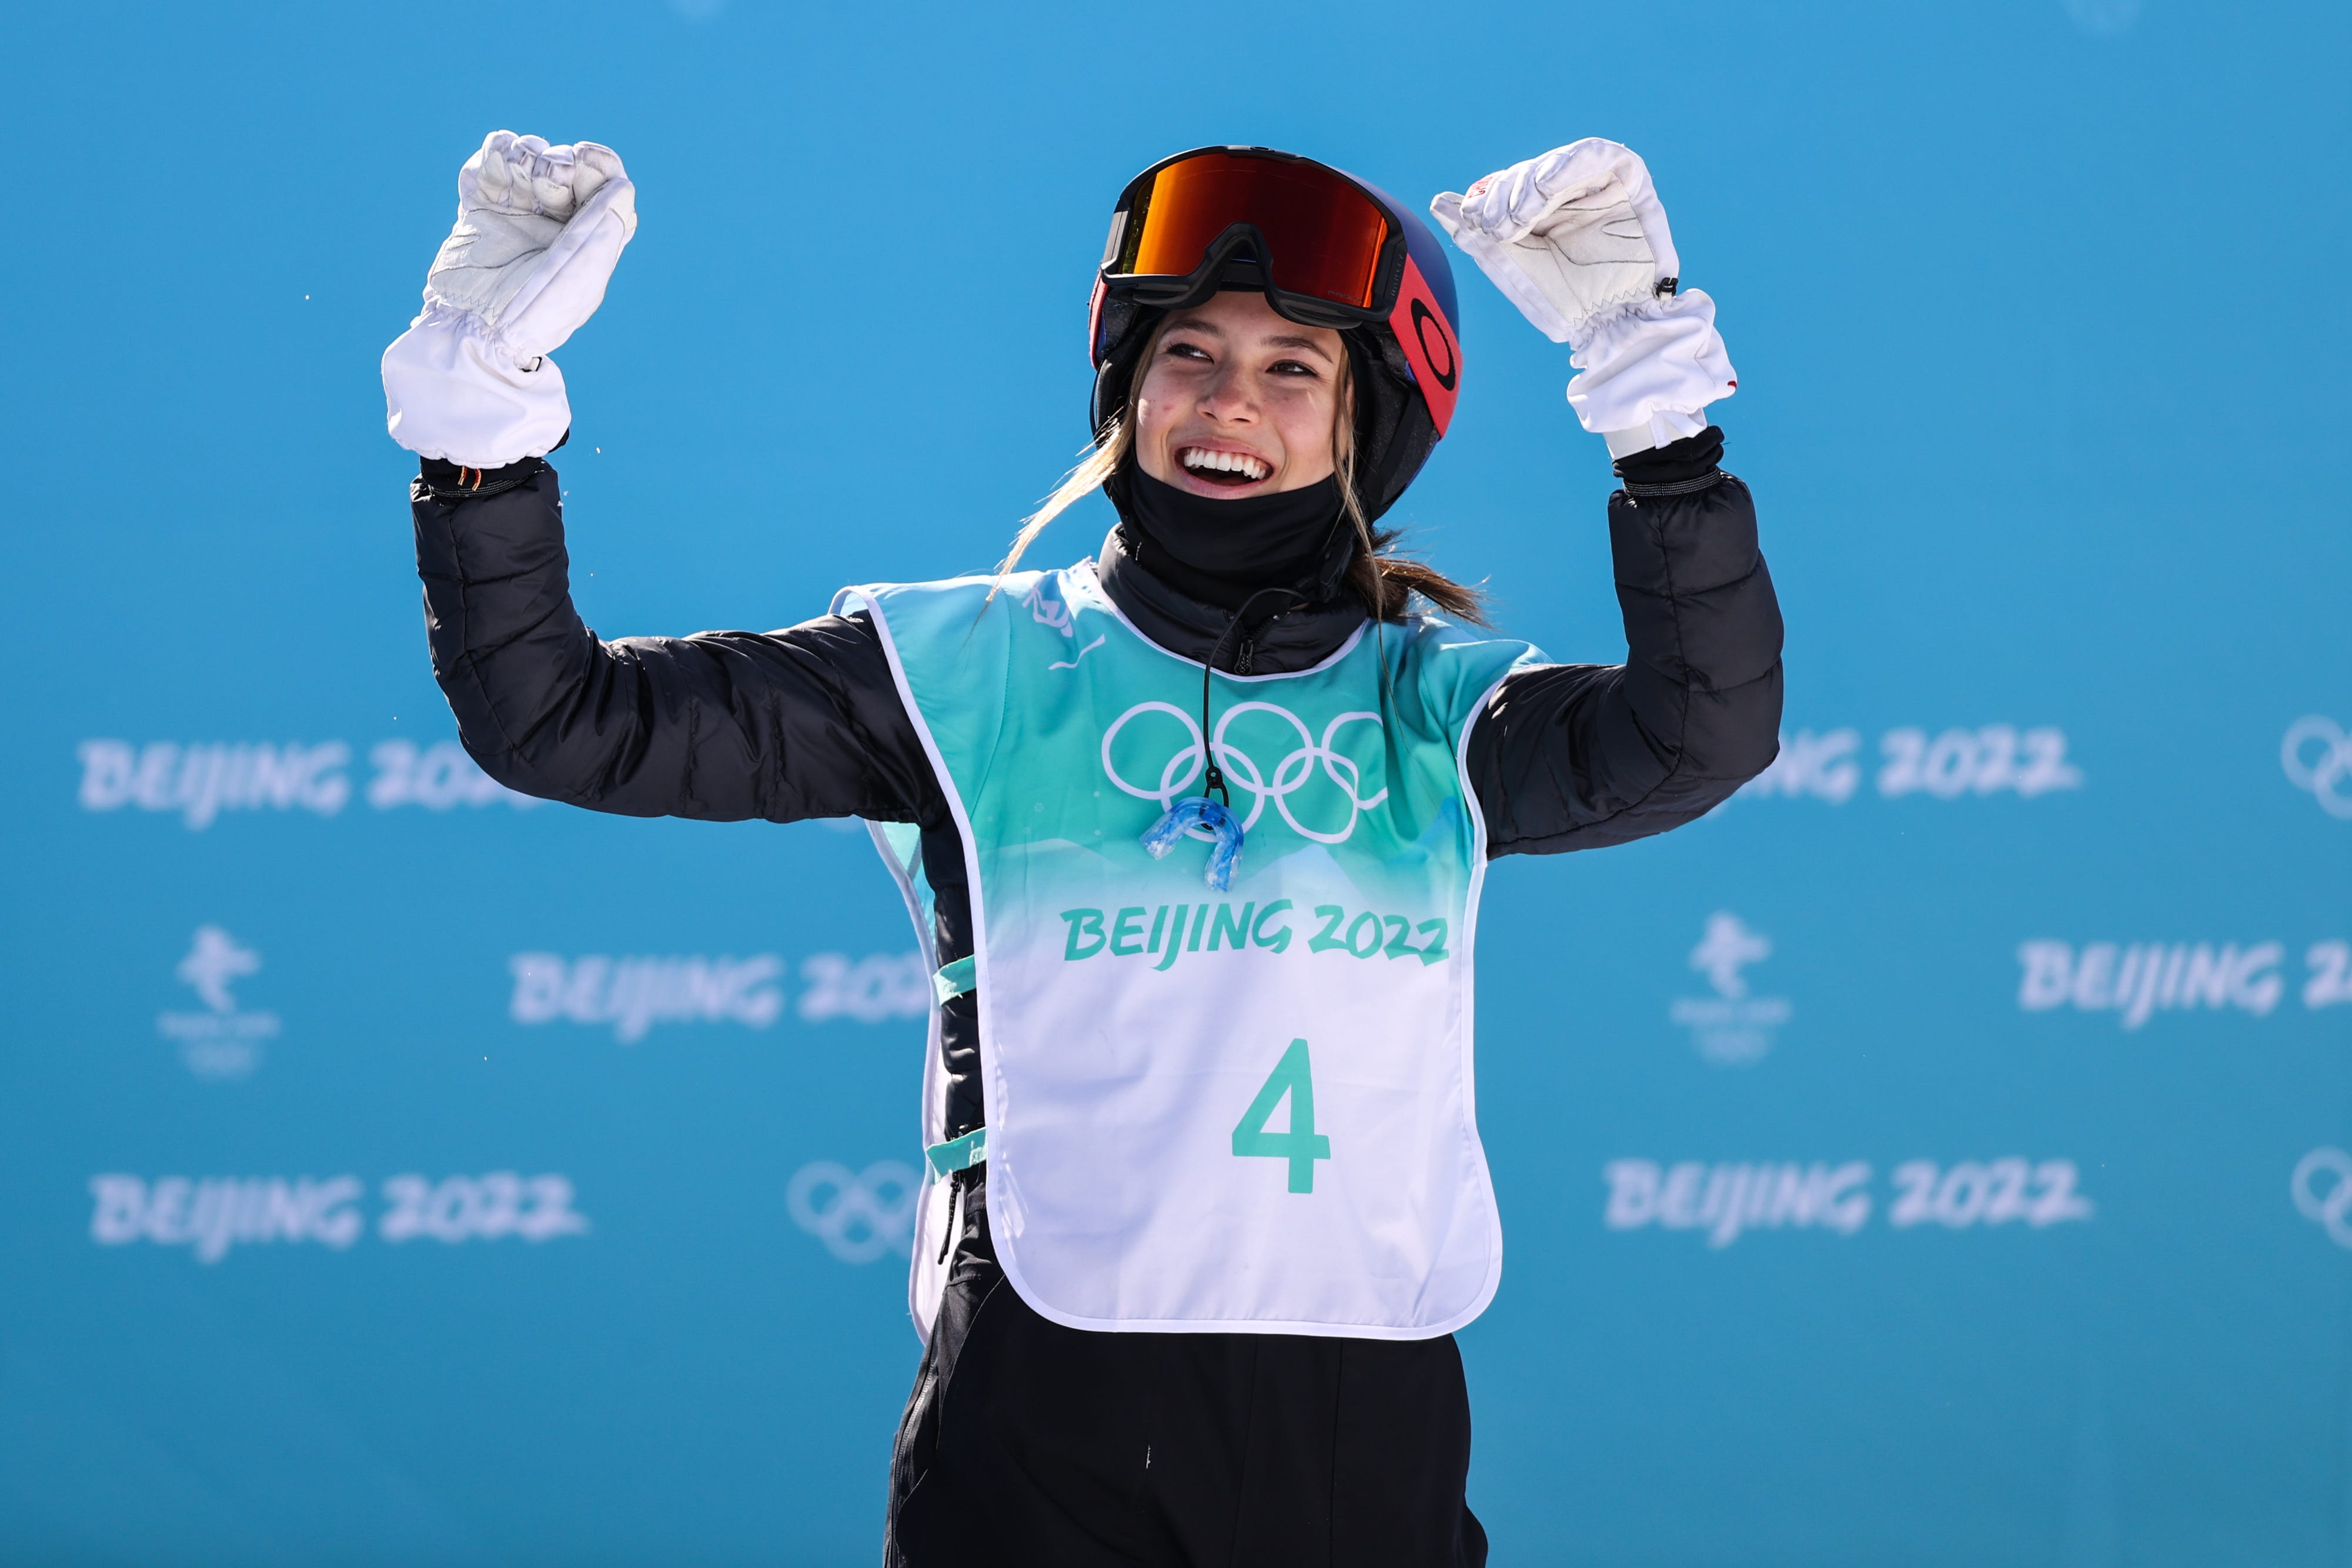 Eileen Gu vom Team China reagiert am 7. Februar 2022 im Big Air Shougang in Peking, China, während der Freestyle Skiing Freeski Big Air-Qualifikation der Frauen am 3. Tag der Olympischen Winterspiele 2022 in Peking.